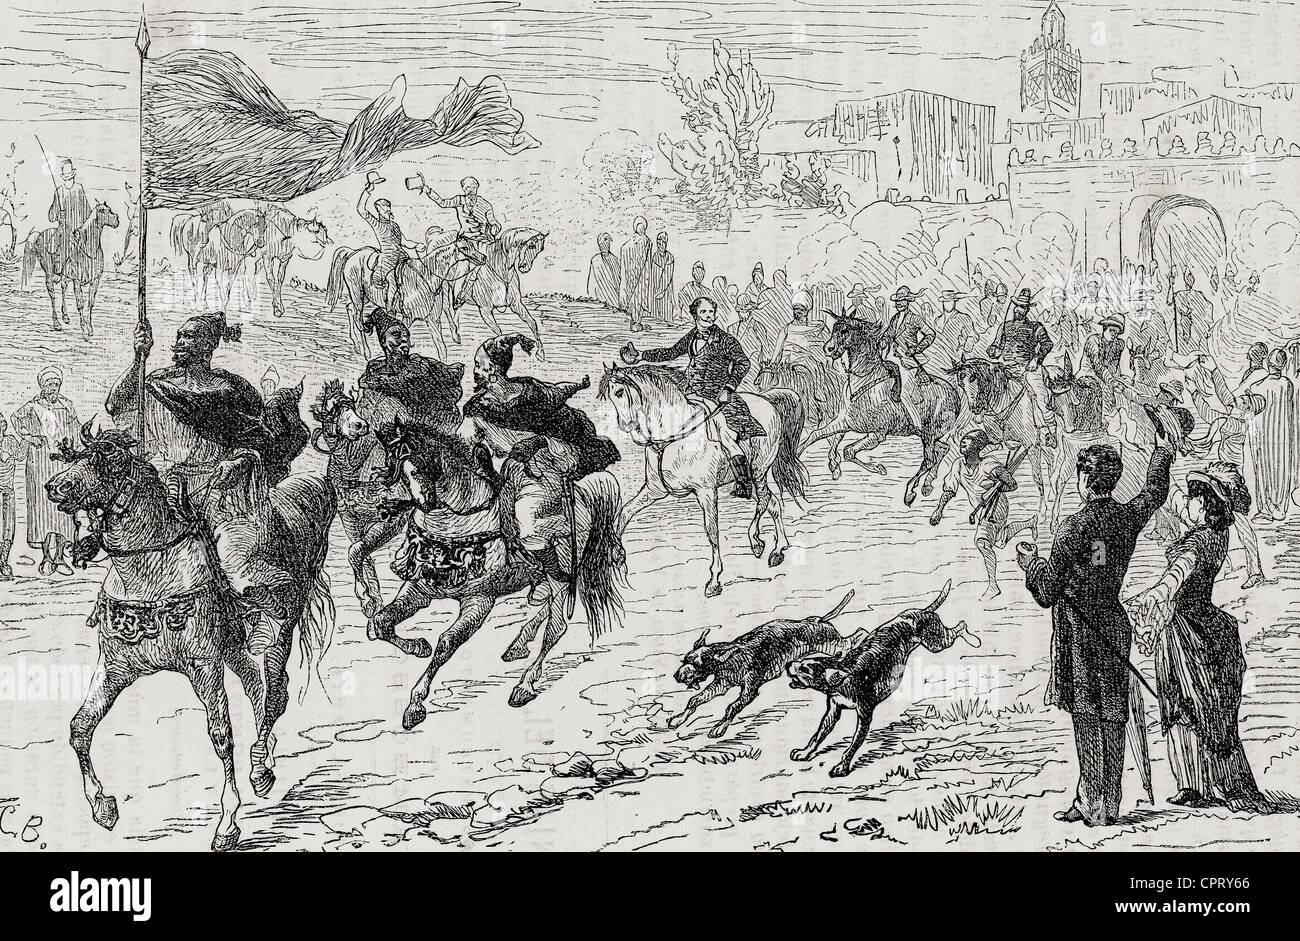 Geschichte Marokkos. Abfahrt von der Karawane nach Fez. Kupferstich von Barberis in der Welt dargestellt, 1885. Stockfoto